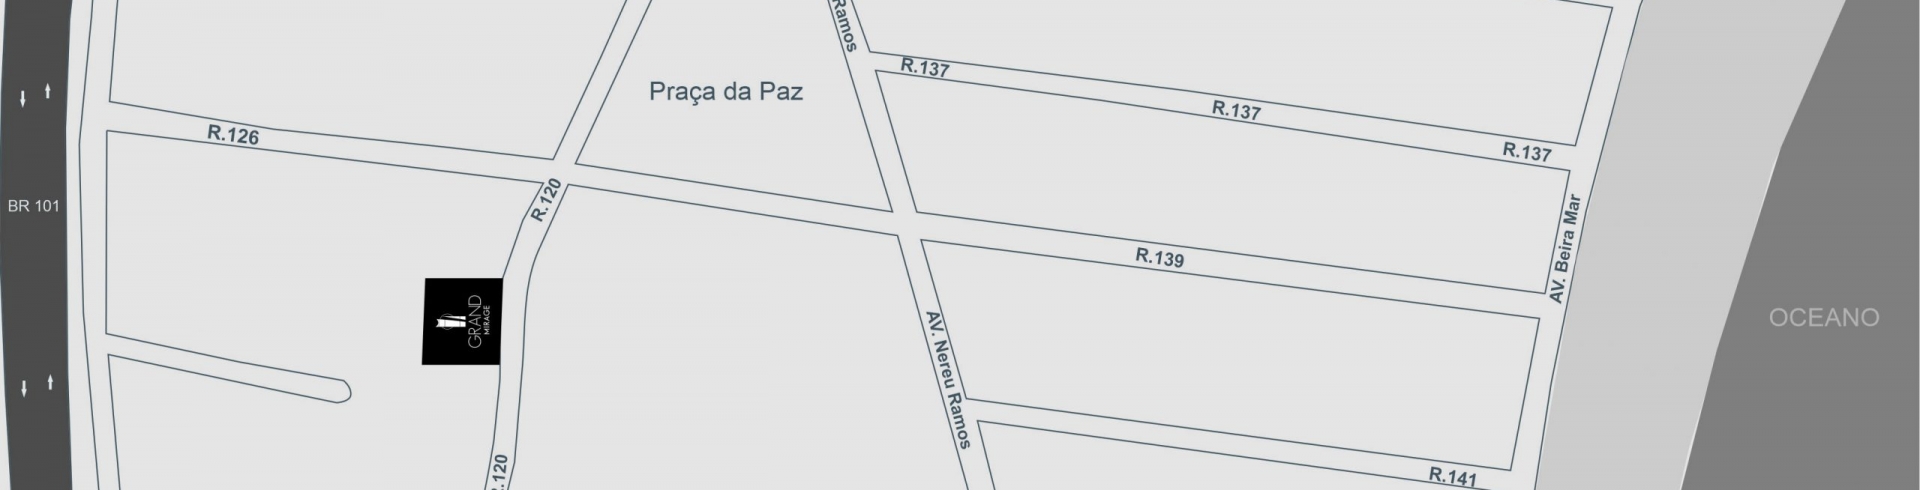 Localização: Rua 120, nº 184, Centro - Itapema